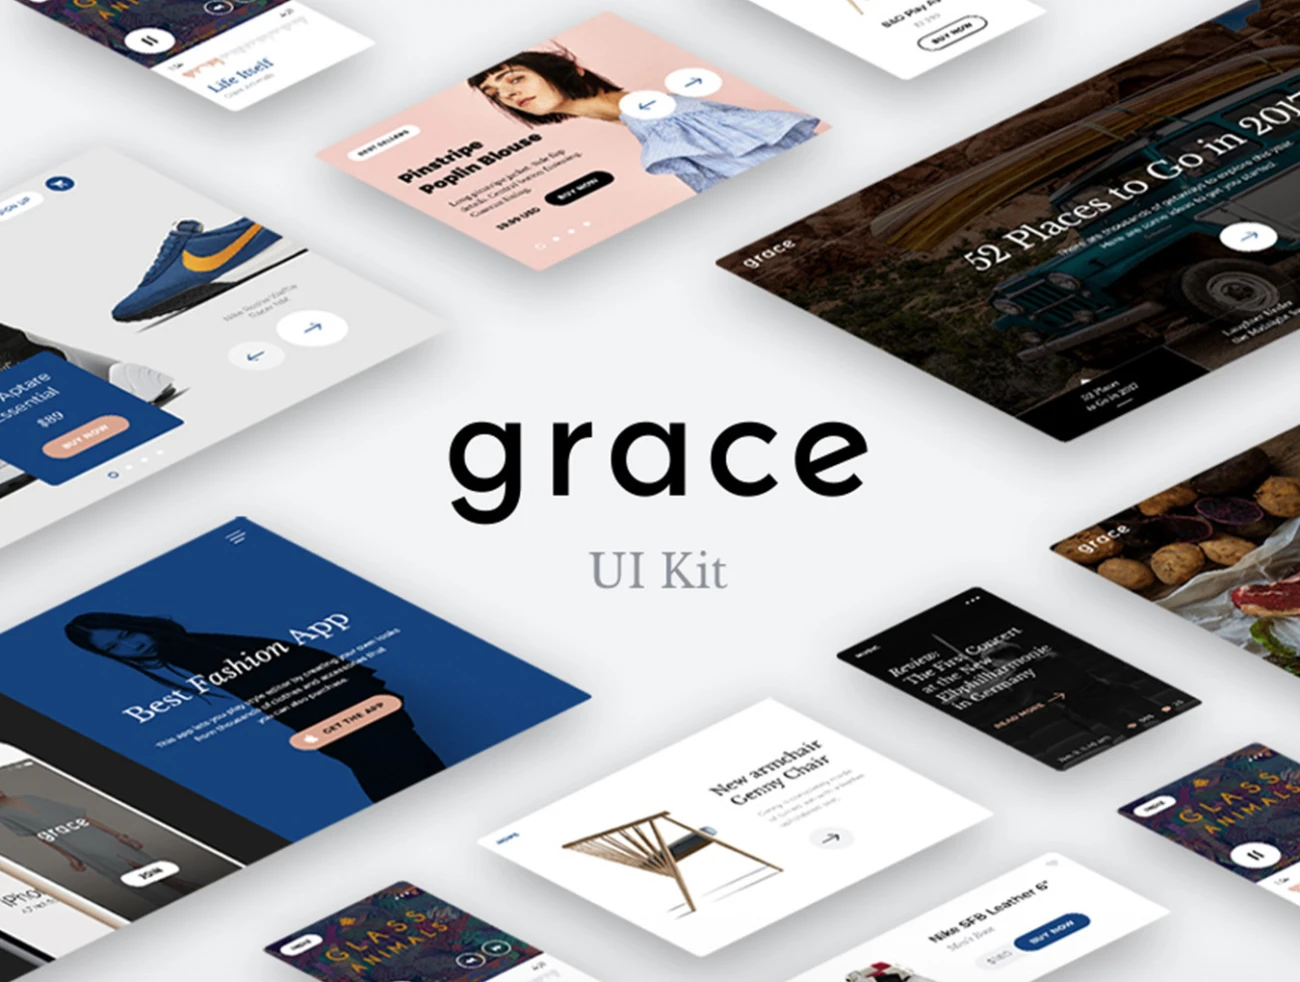 Grace UI Kit 时尚电商应用套件-ui套件、主页、介绍、付款、列表、卡片式、字体、应用、引导页、播放器、支付、注册、登录页、着陆页、网站、网购-到位啦UI